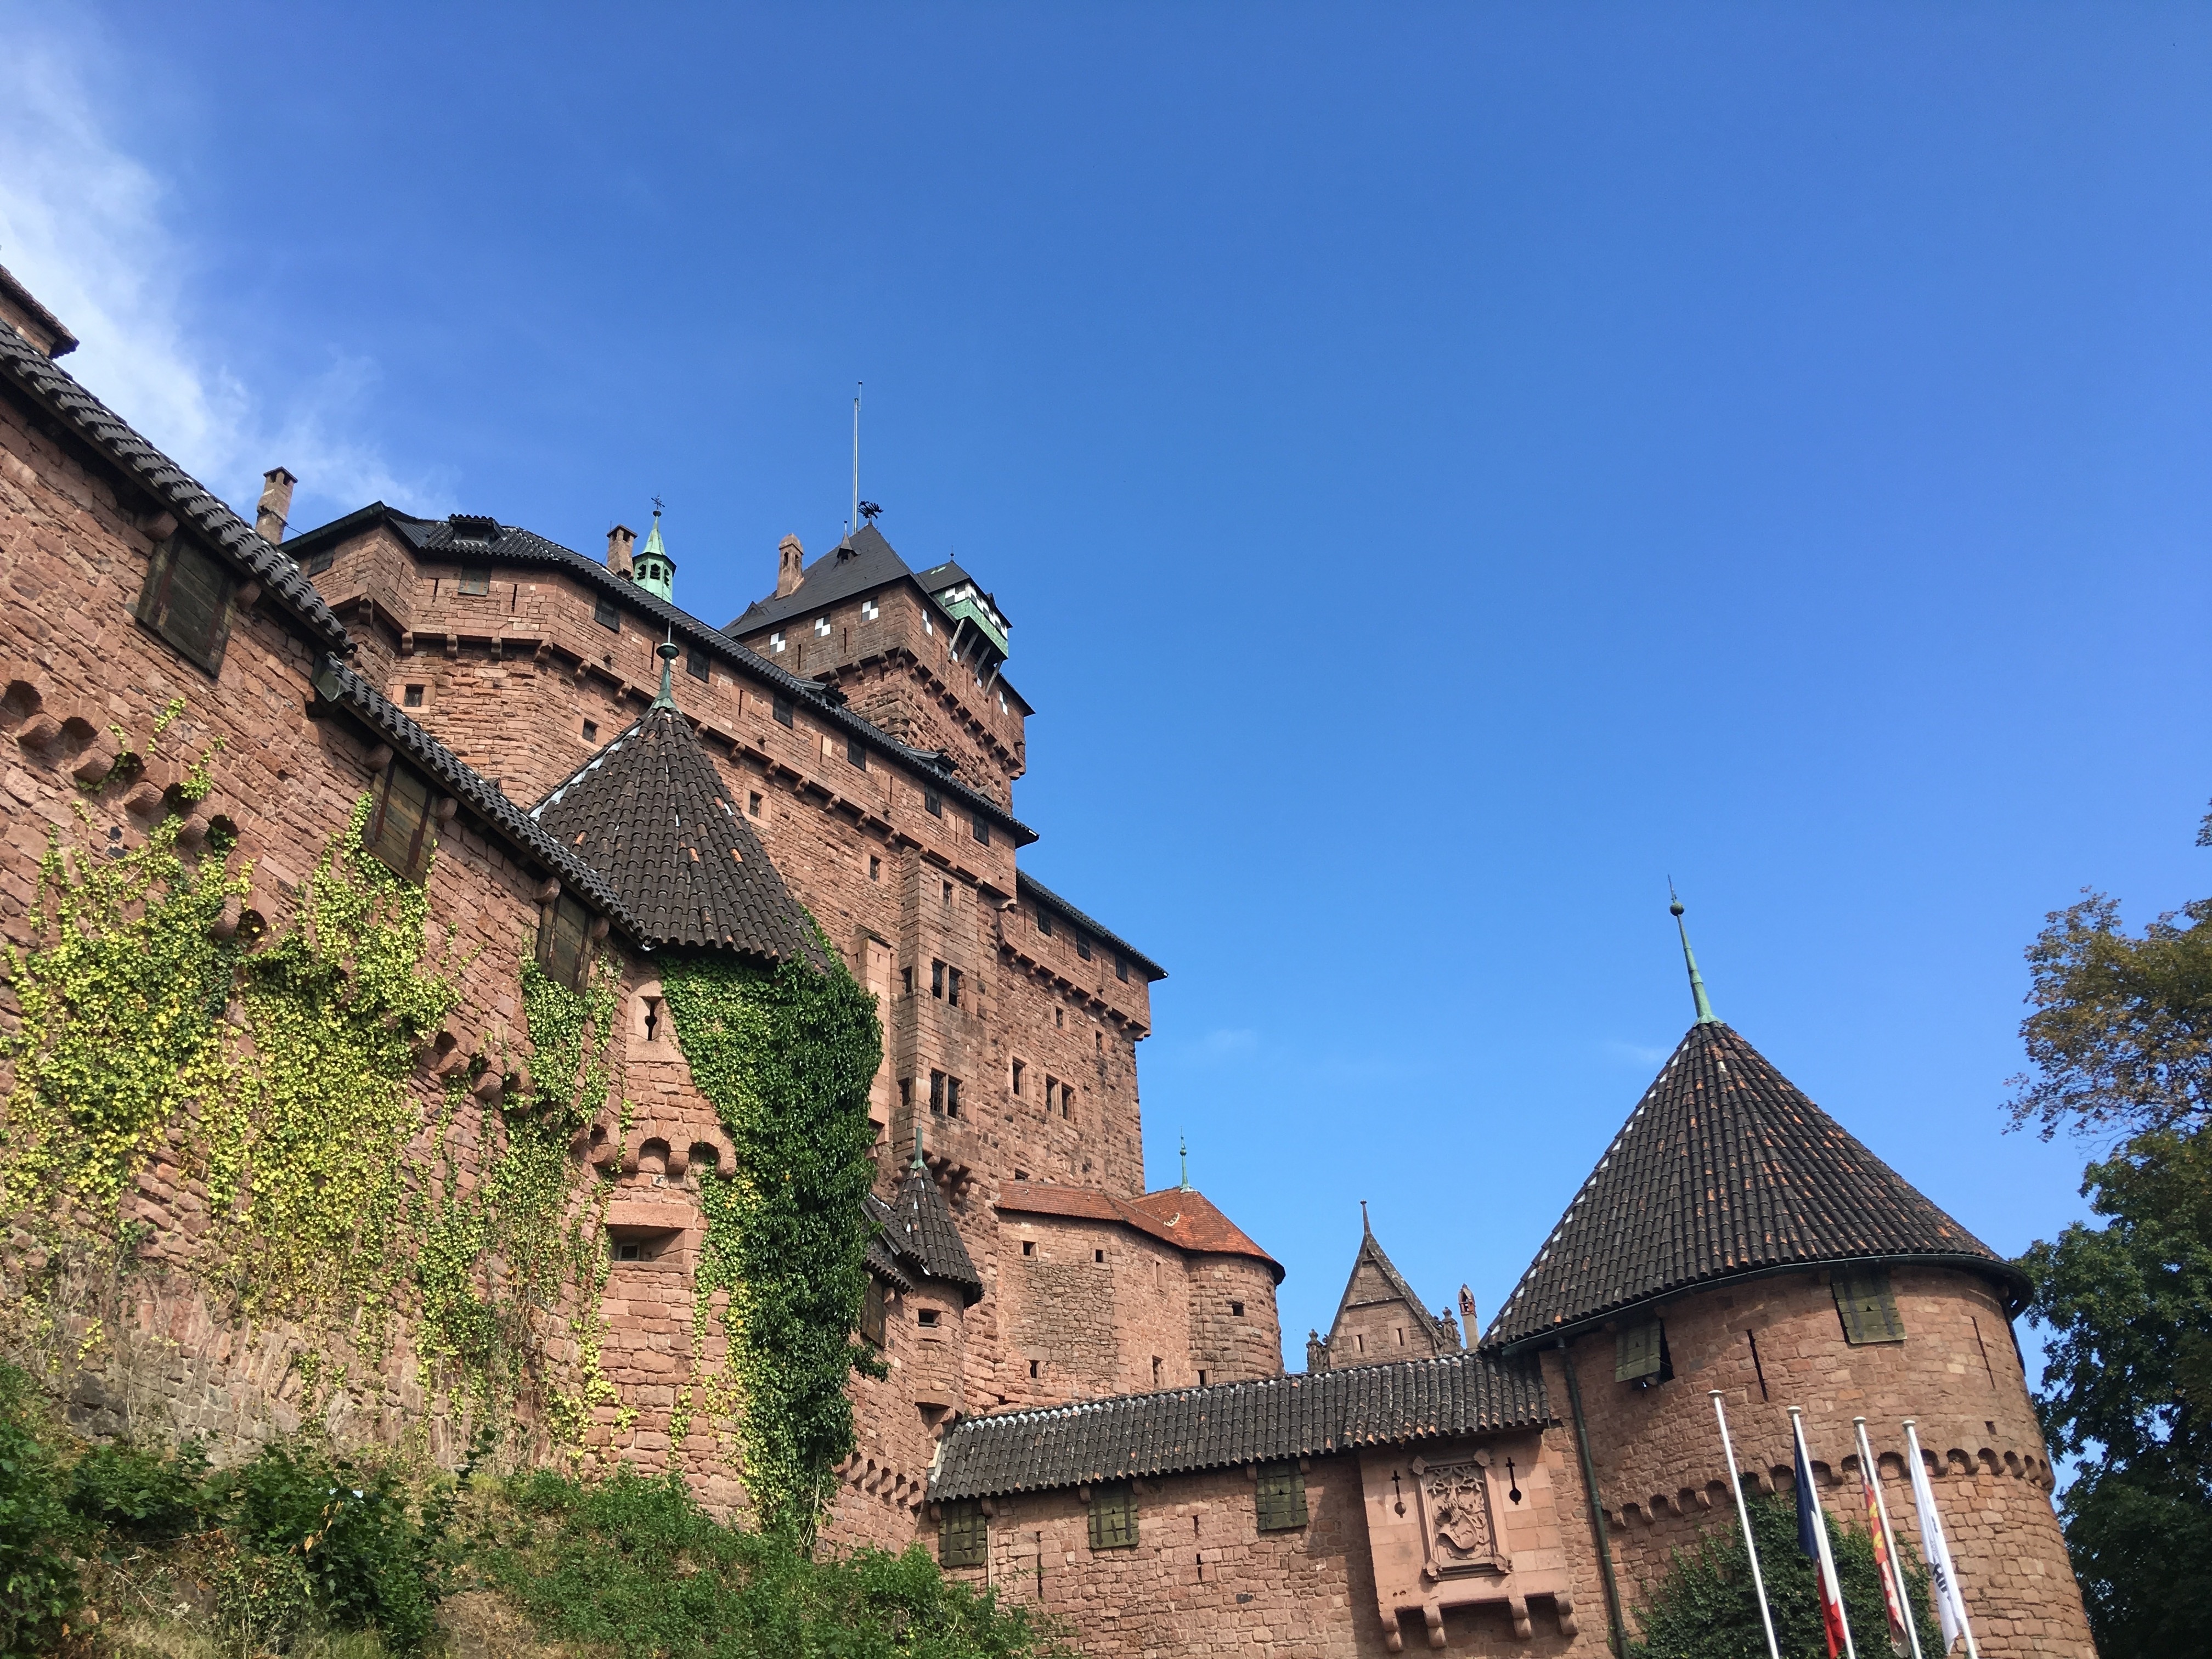 Village крепость. Haut Koenigsbourg Castle. Средневековые замки Эльзас. Донжон Эльзас верхний Кенигсберг. Замок Хаузен Эльзас.